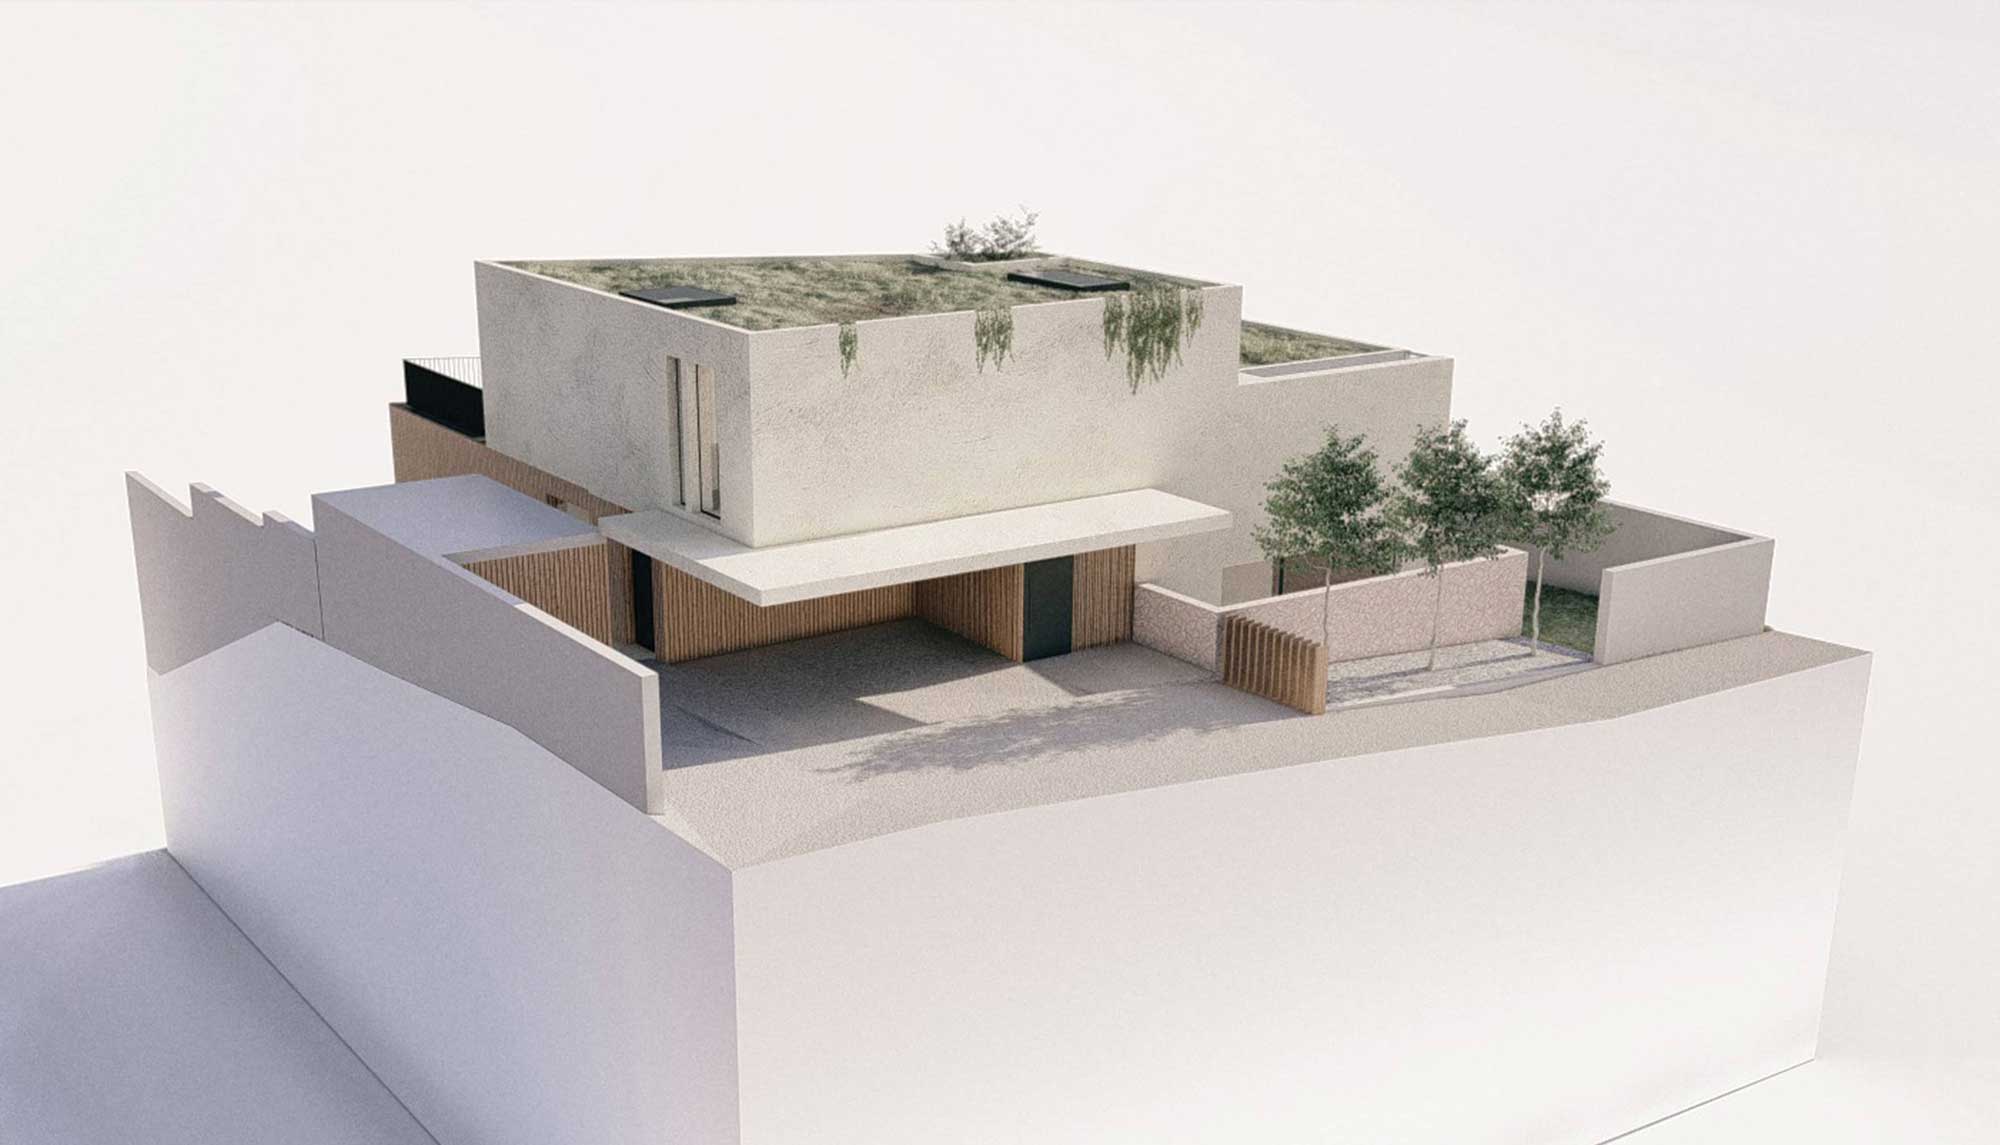 Hausansicht | Haus Planung | Innsbruck Umgebung, Tirol | Haus bauen Ideen | Visualisierung